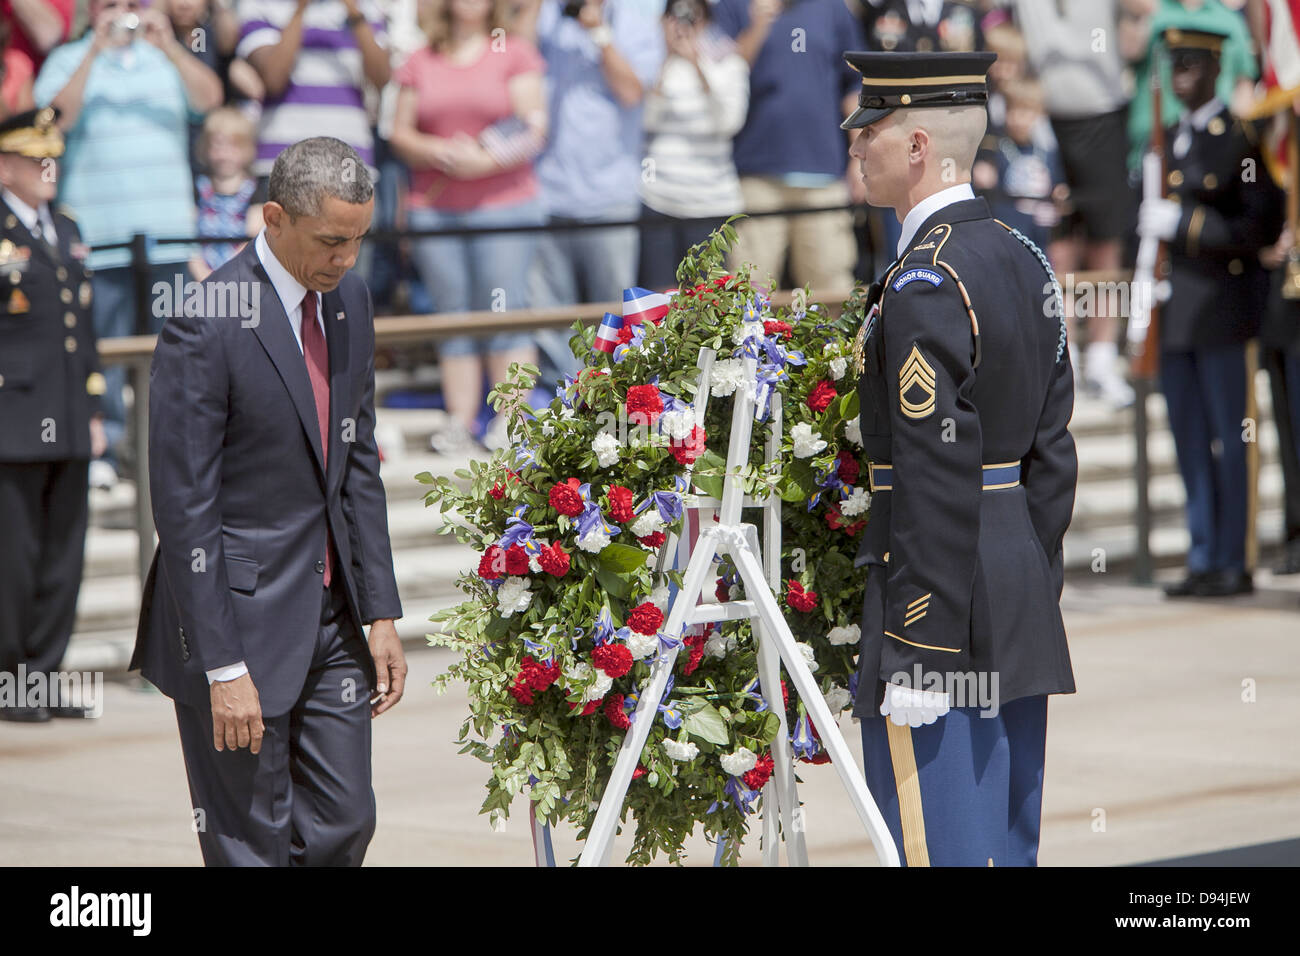 US-Präsident Barack Obama während der Volkstrauertag Kranzniederlegung Zeremonie am Grab des unbekannten Soldaten 27. Mai 2013 am Nationalfriedhof Arlington, VA. Stockfoto